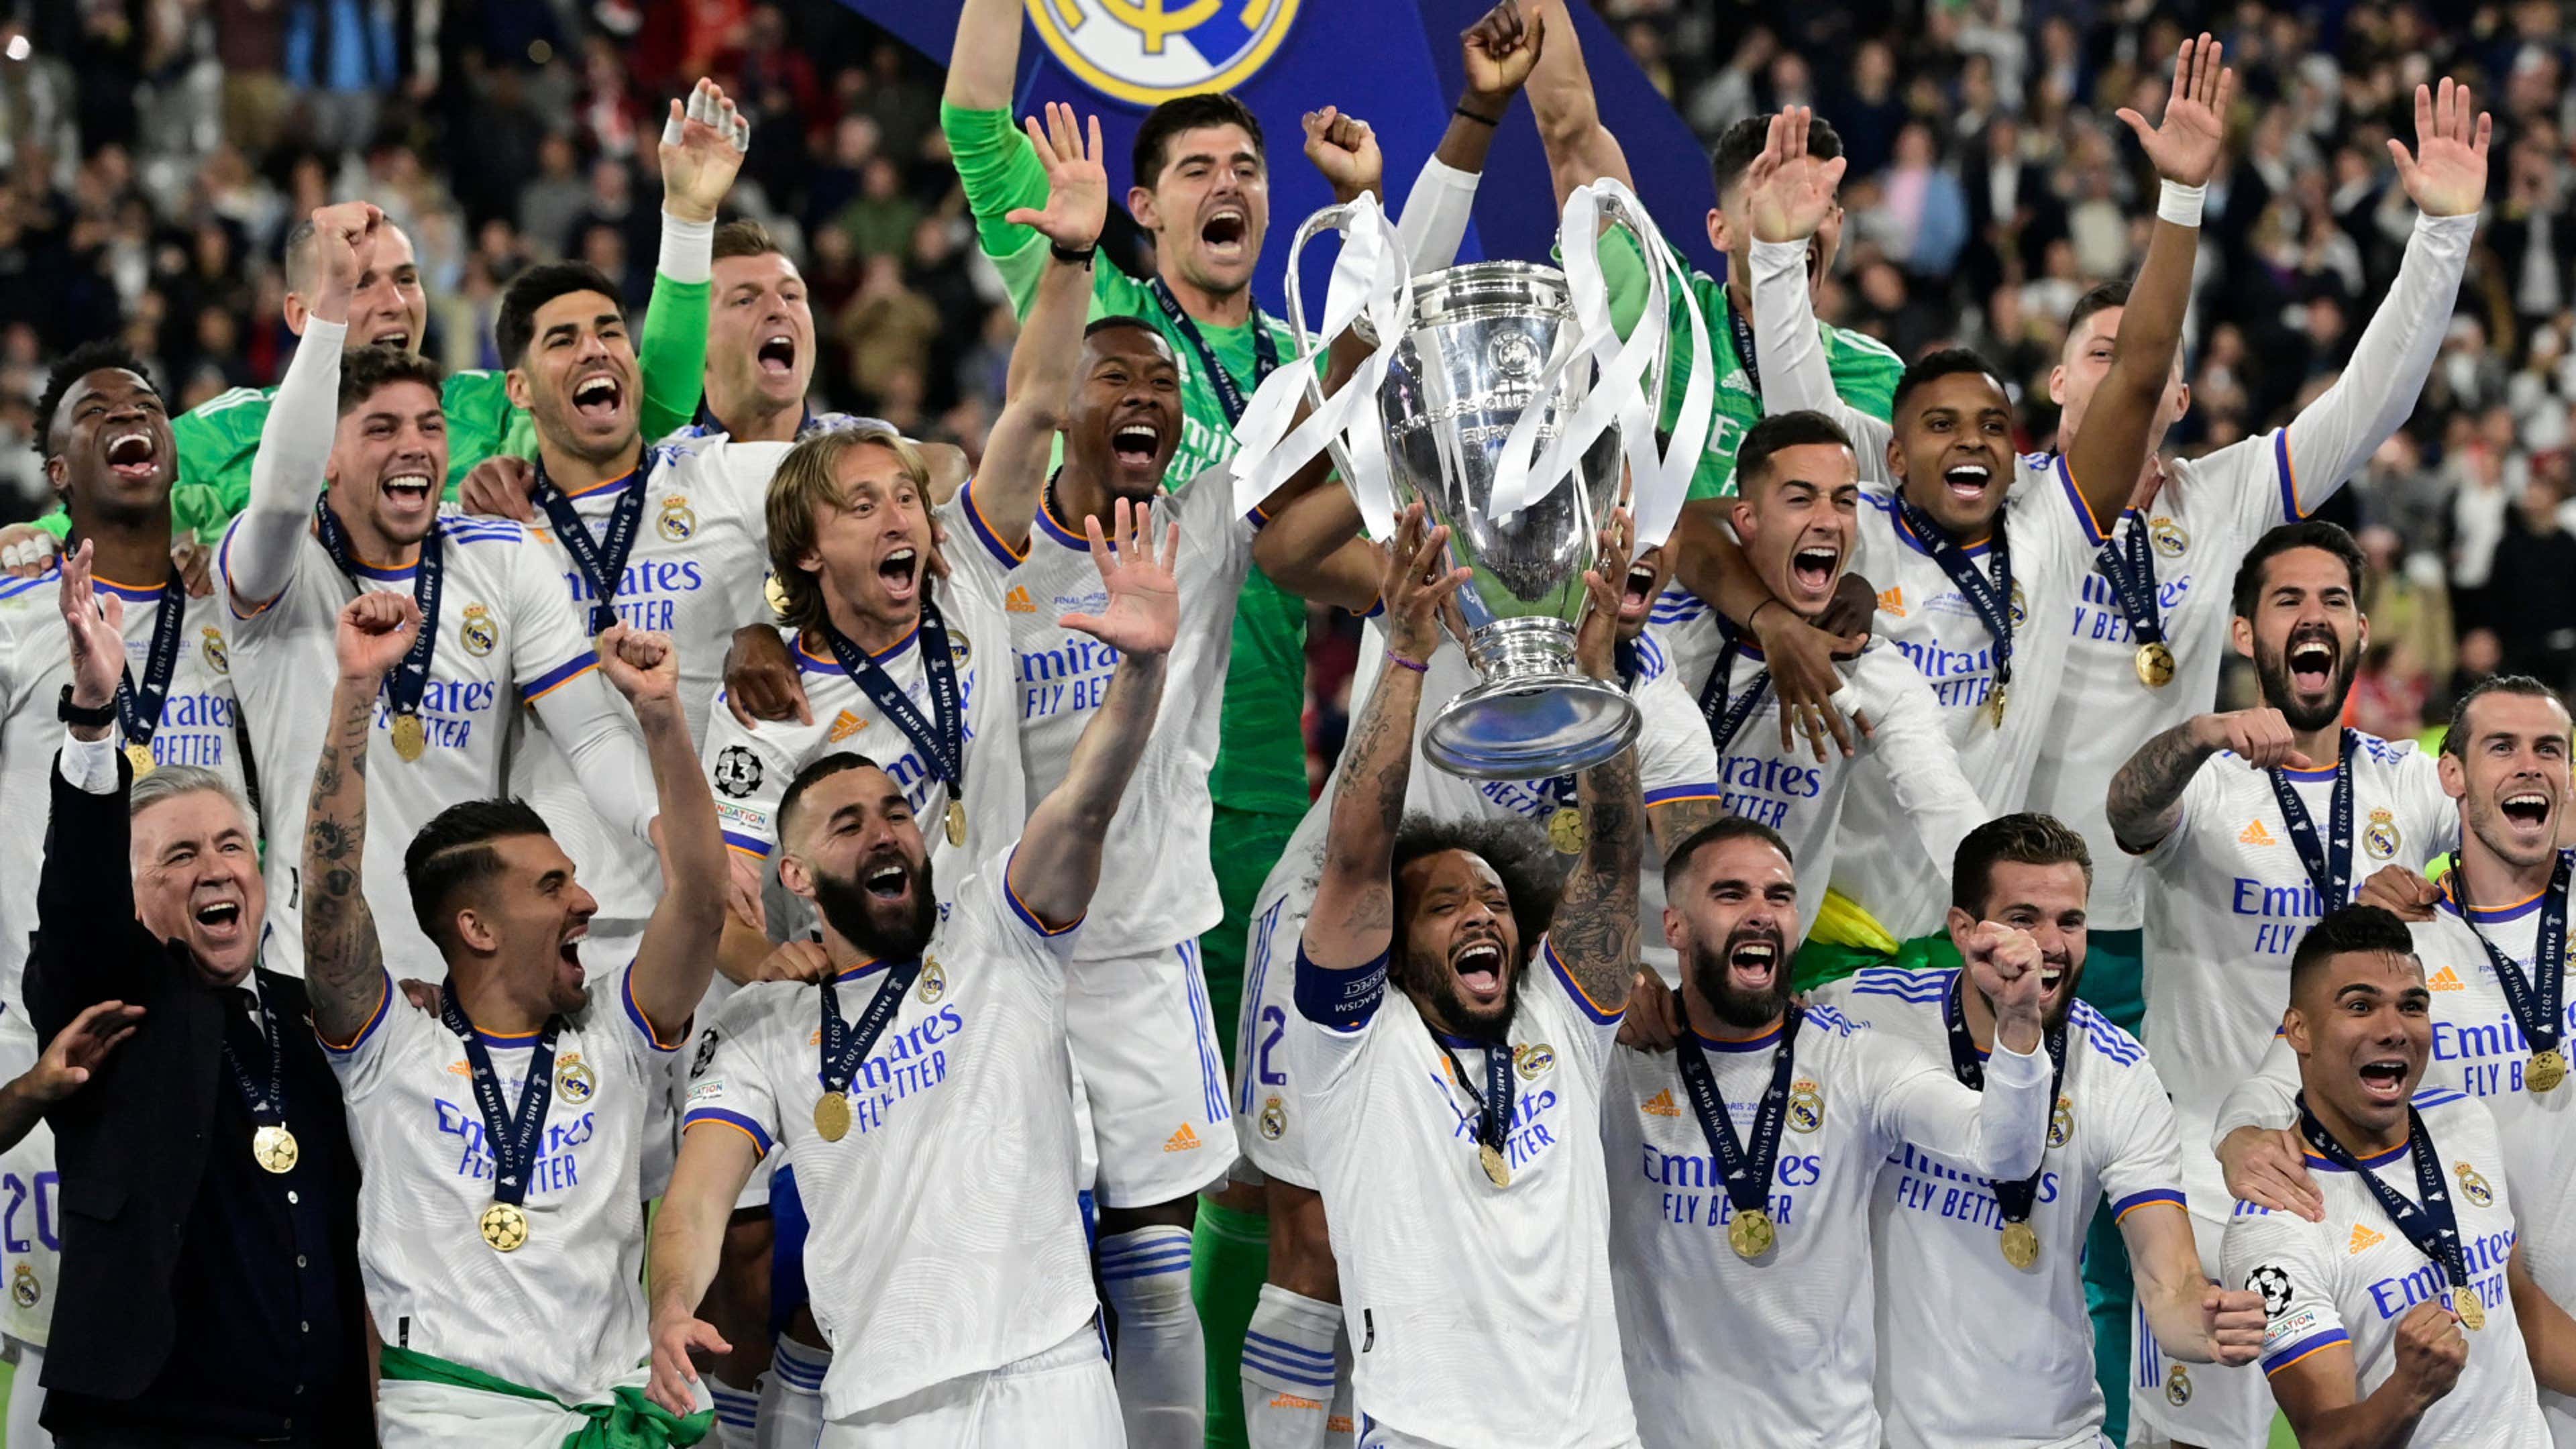 Maiores campeões mundiais: veja como ficou lista após título do Real Madrid  - Superesportes